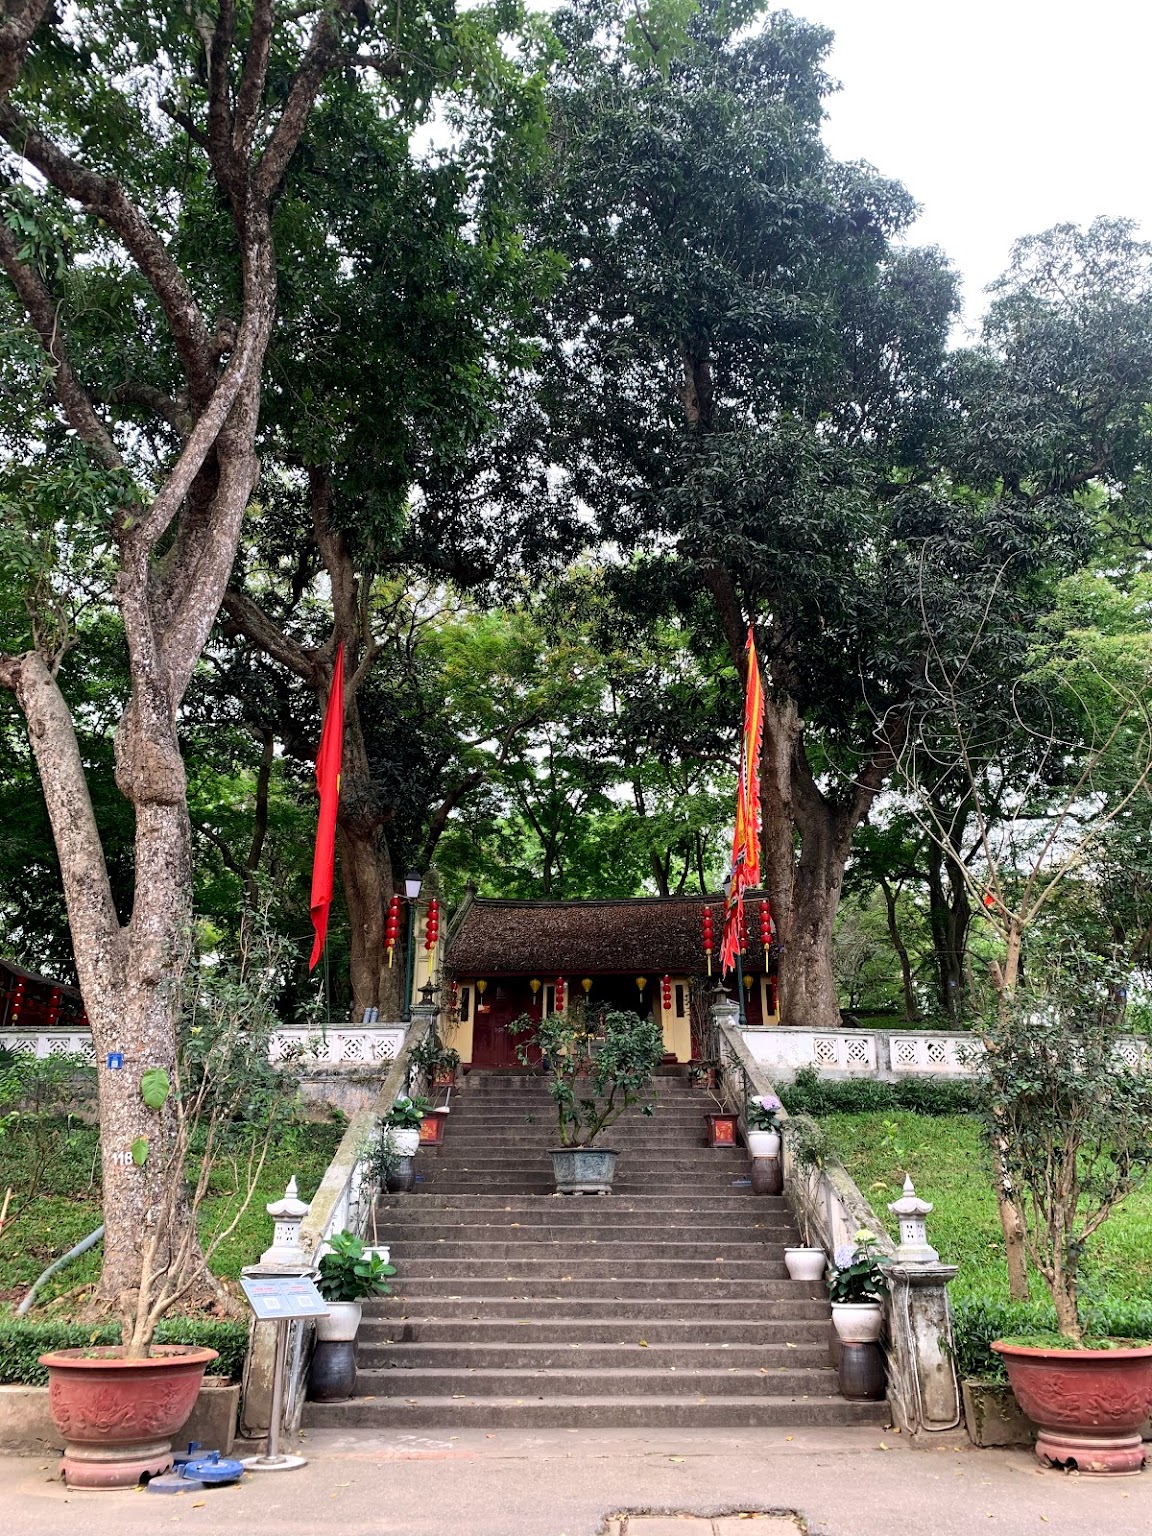 Nung Mountain Temple